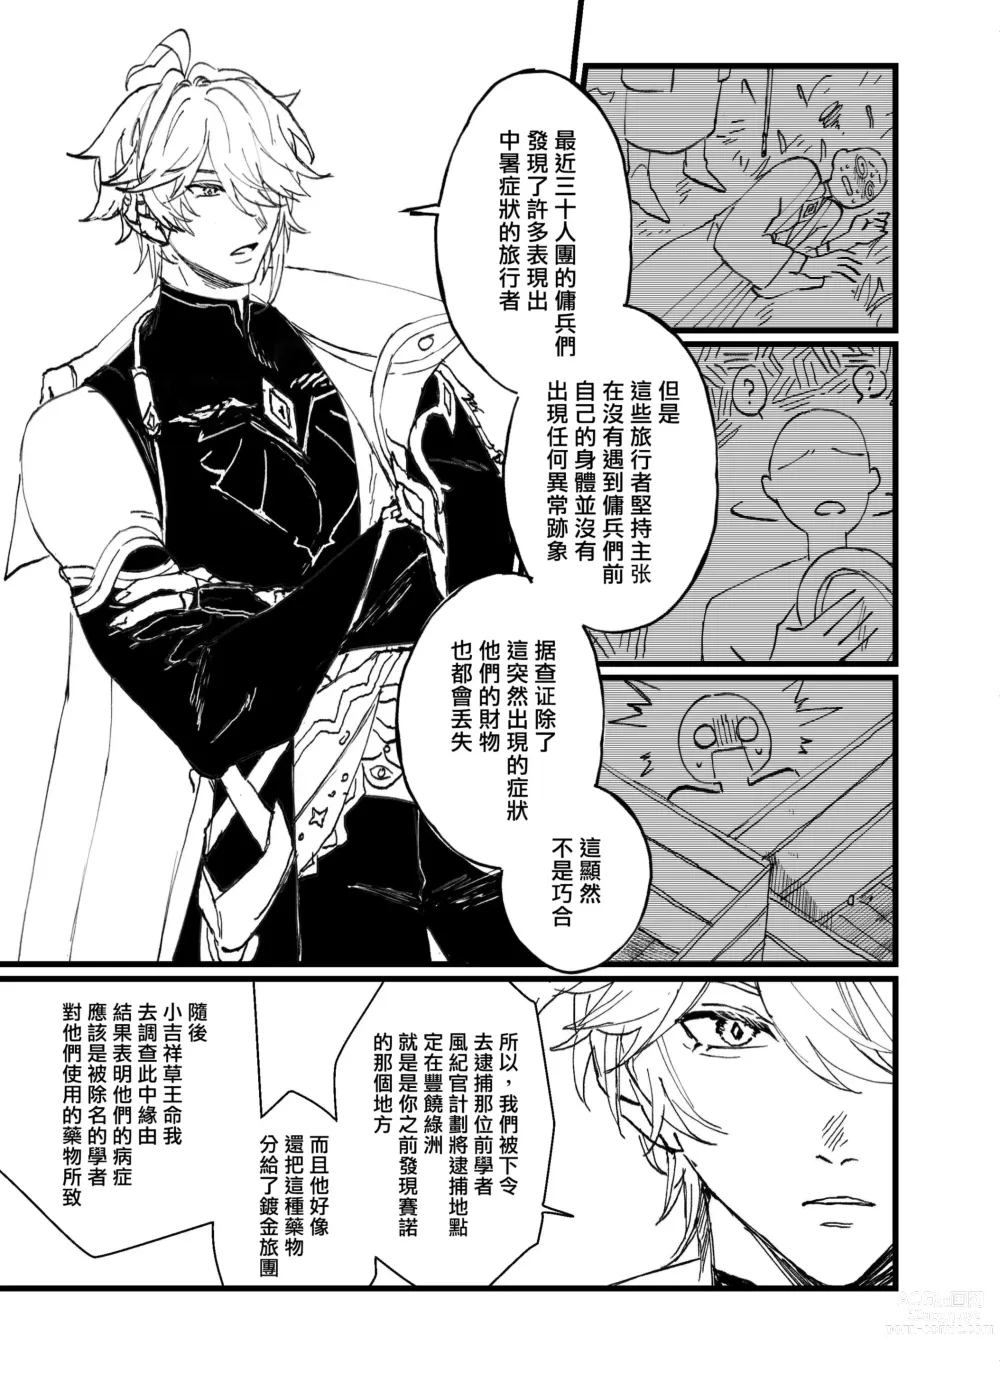 Page 23 of doujinshi Overheat